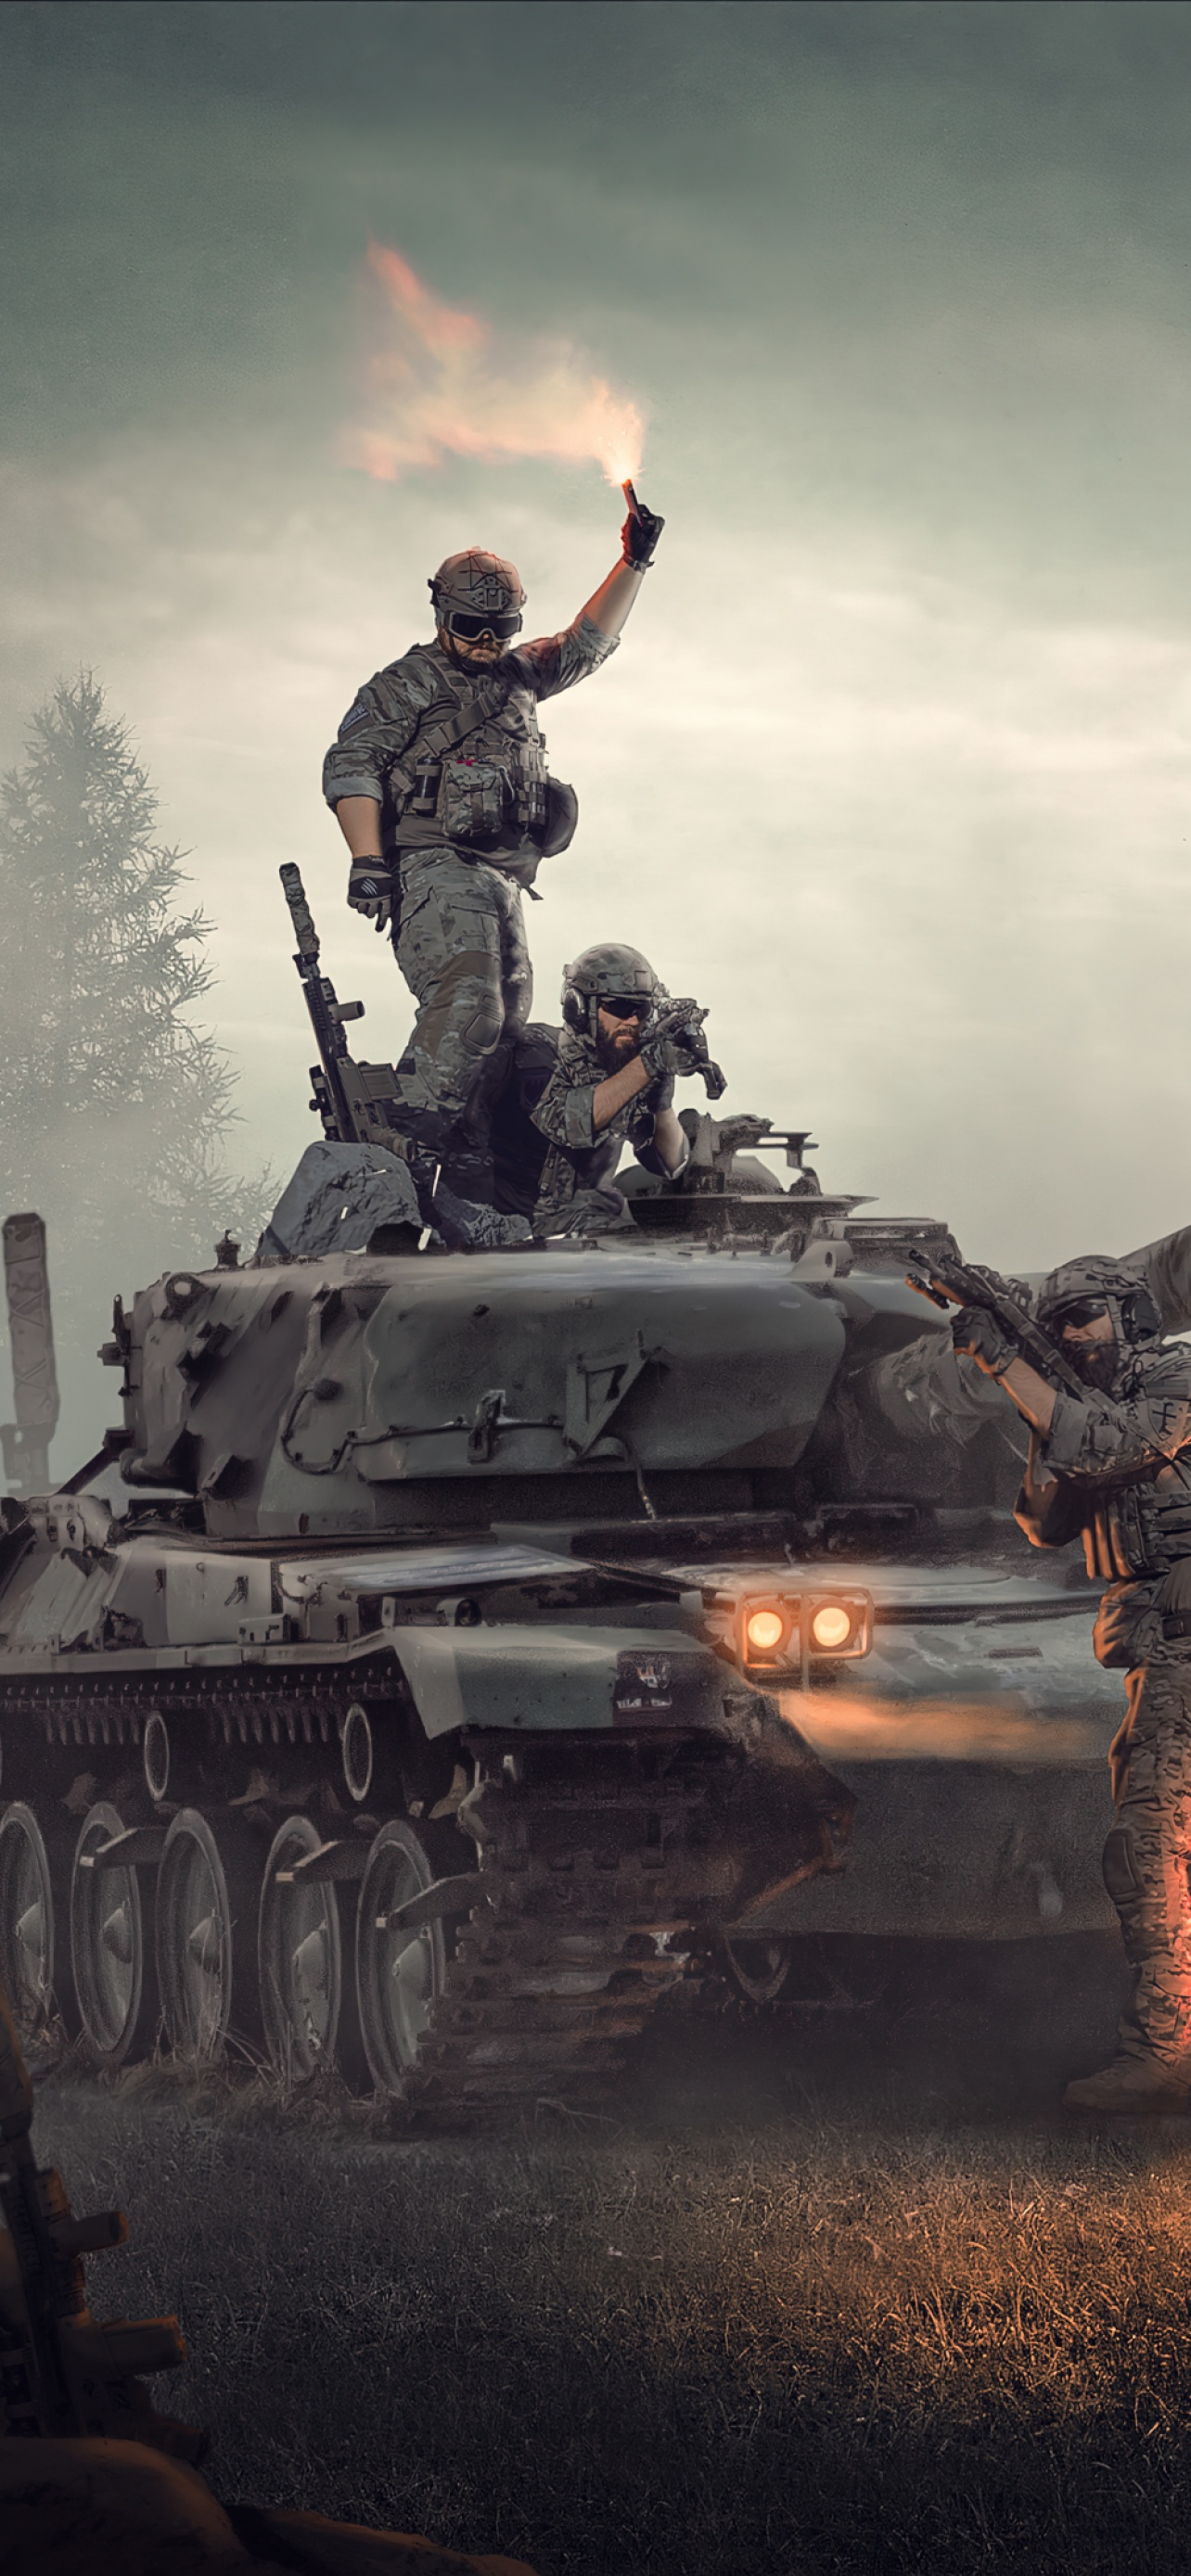 Hình nền quân đội 4K với xe tăng và cảnh quân đội sẽ khiến bạn cảm thấy mạnh mẽ và tự hào. Tuyệt vời cho các fan của quân đội, hình ảnh chất lượng cao sẽ khiến bạn cảm thấy như đang sống trong thế giới của các người hùng.